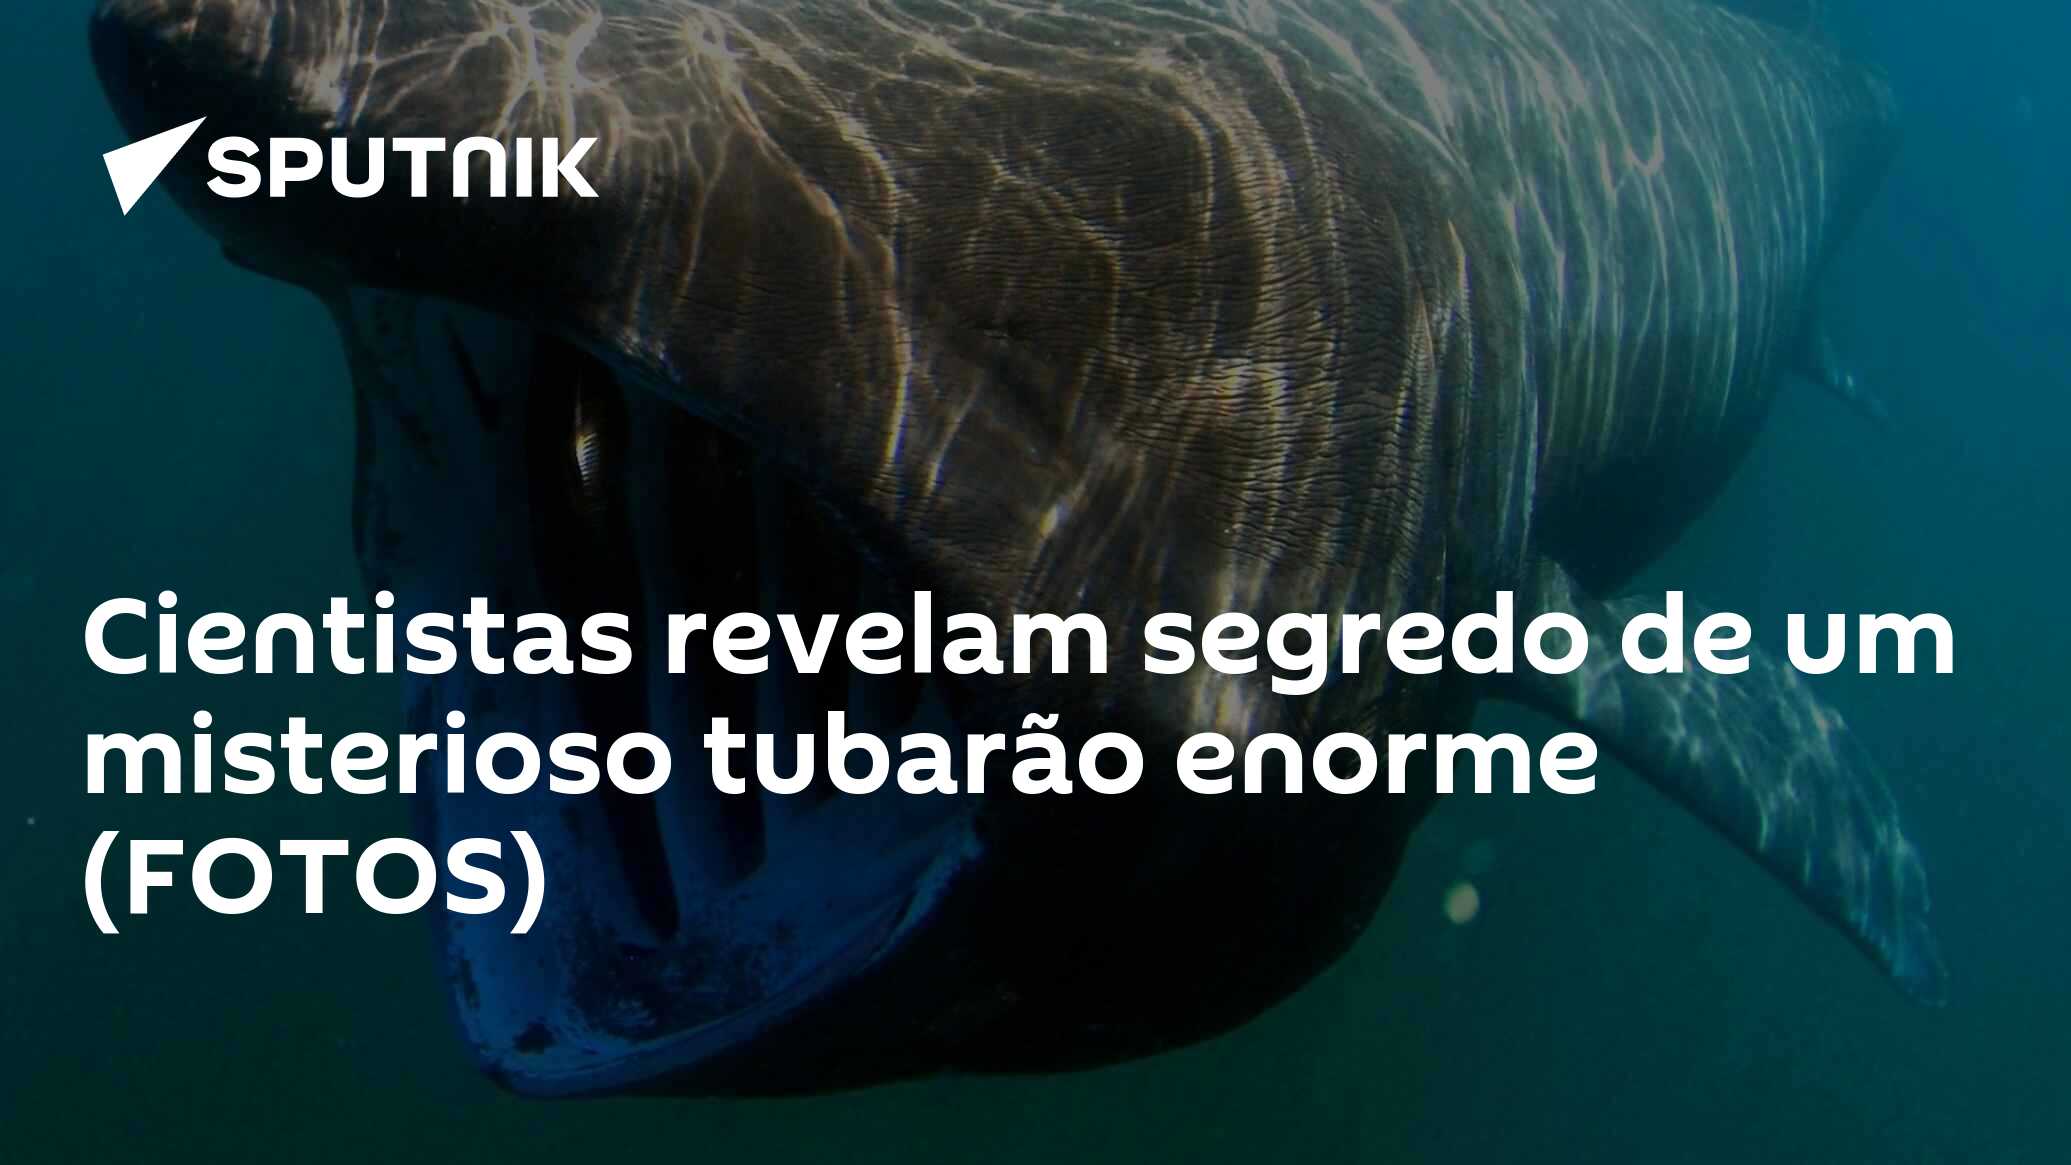 Cientistas revelam segredo de um misterioso tubarão enorme (FOTOS) -  21.08.2018, Sputnik Brasil